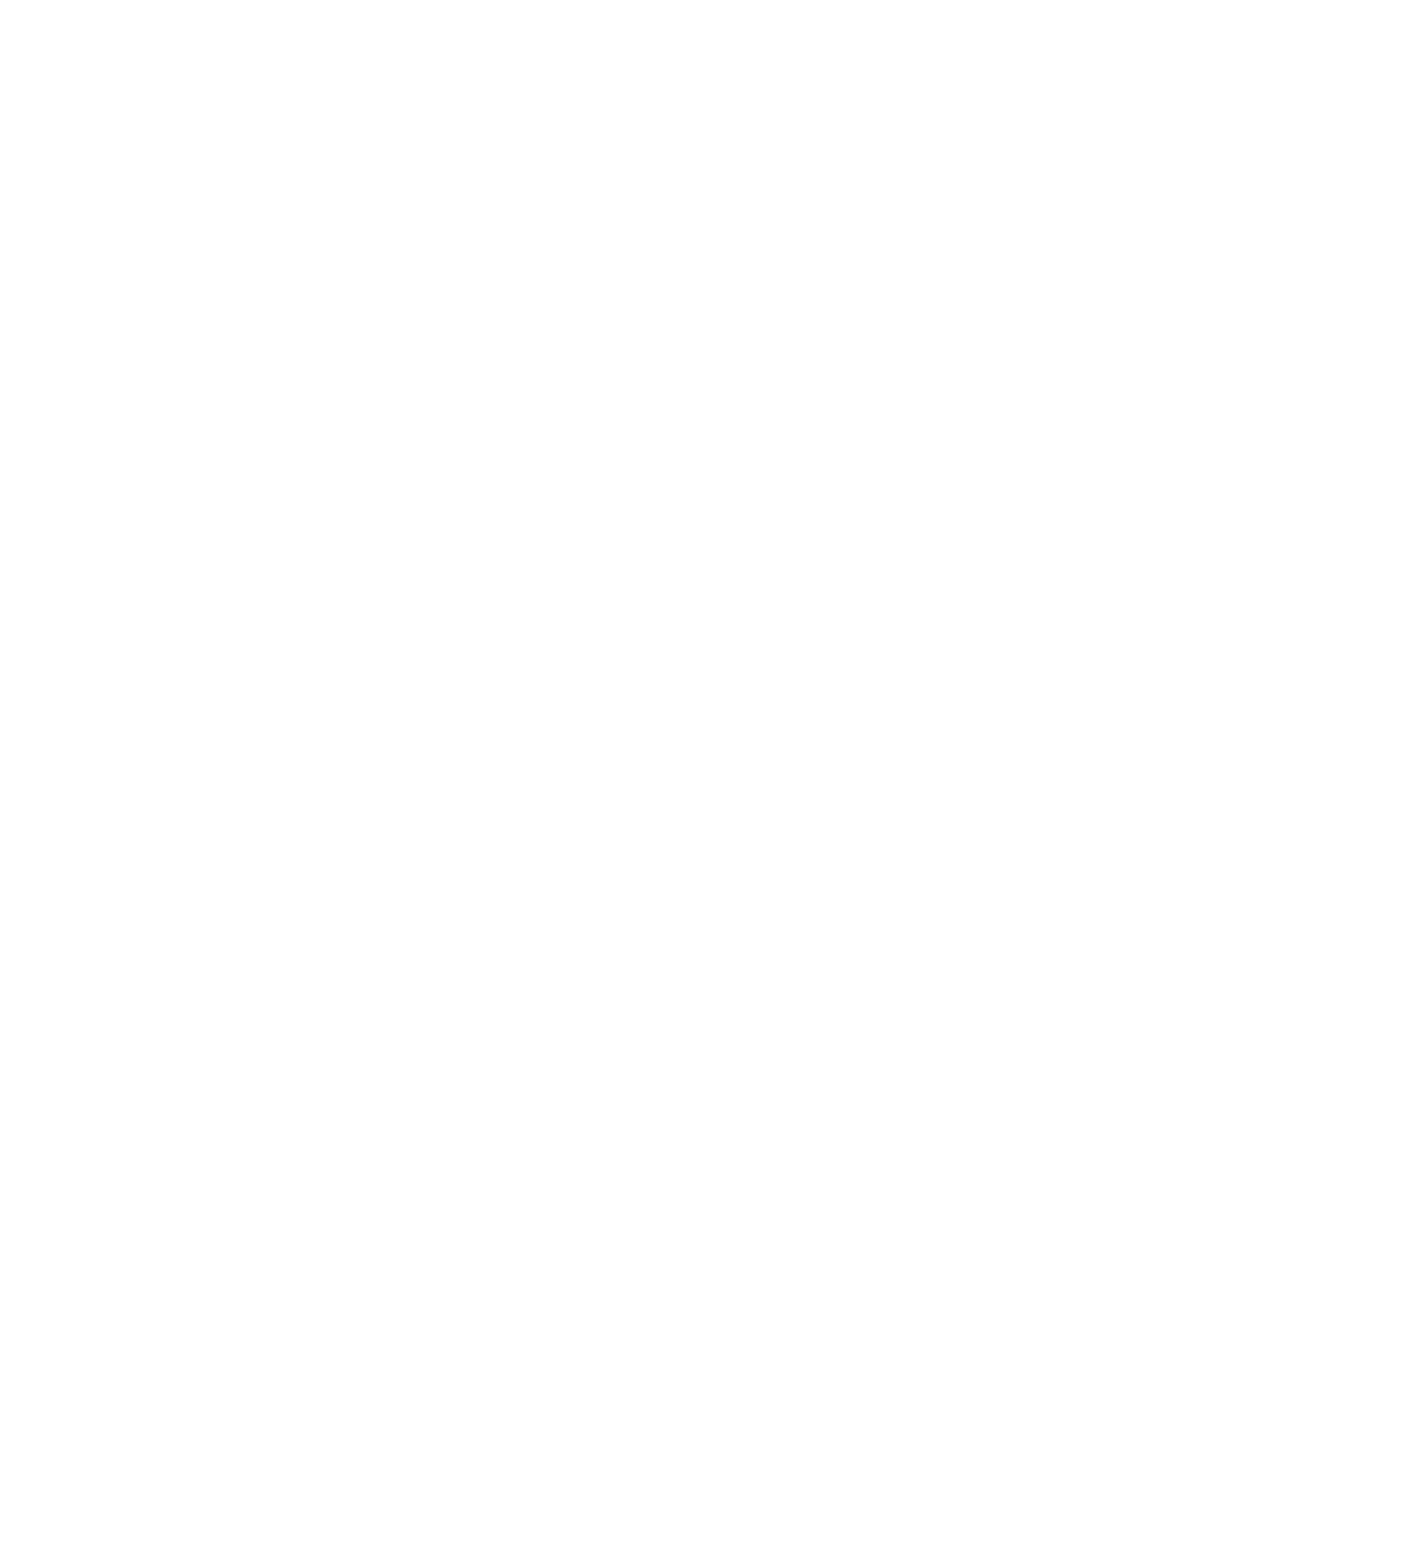 Publishing institute